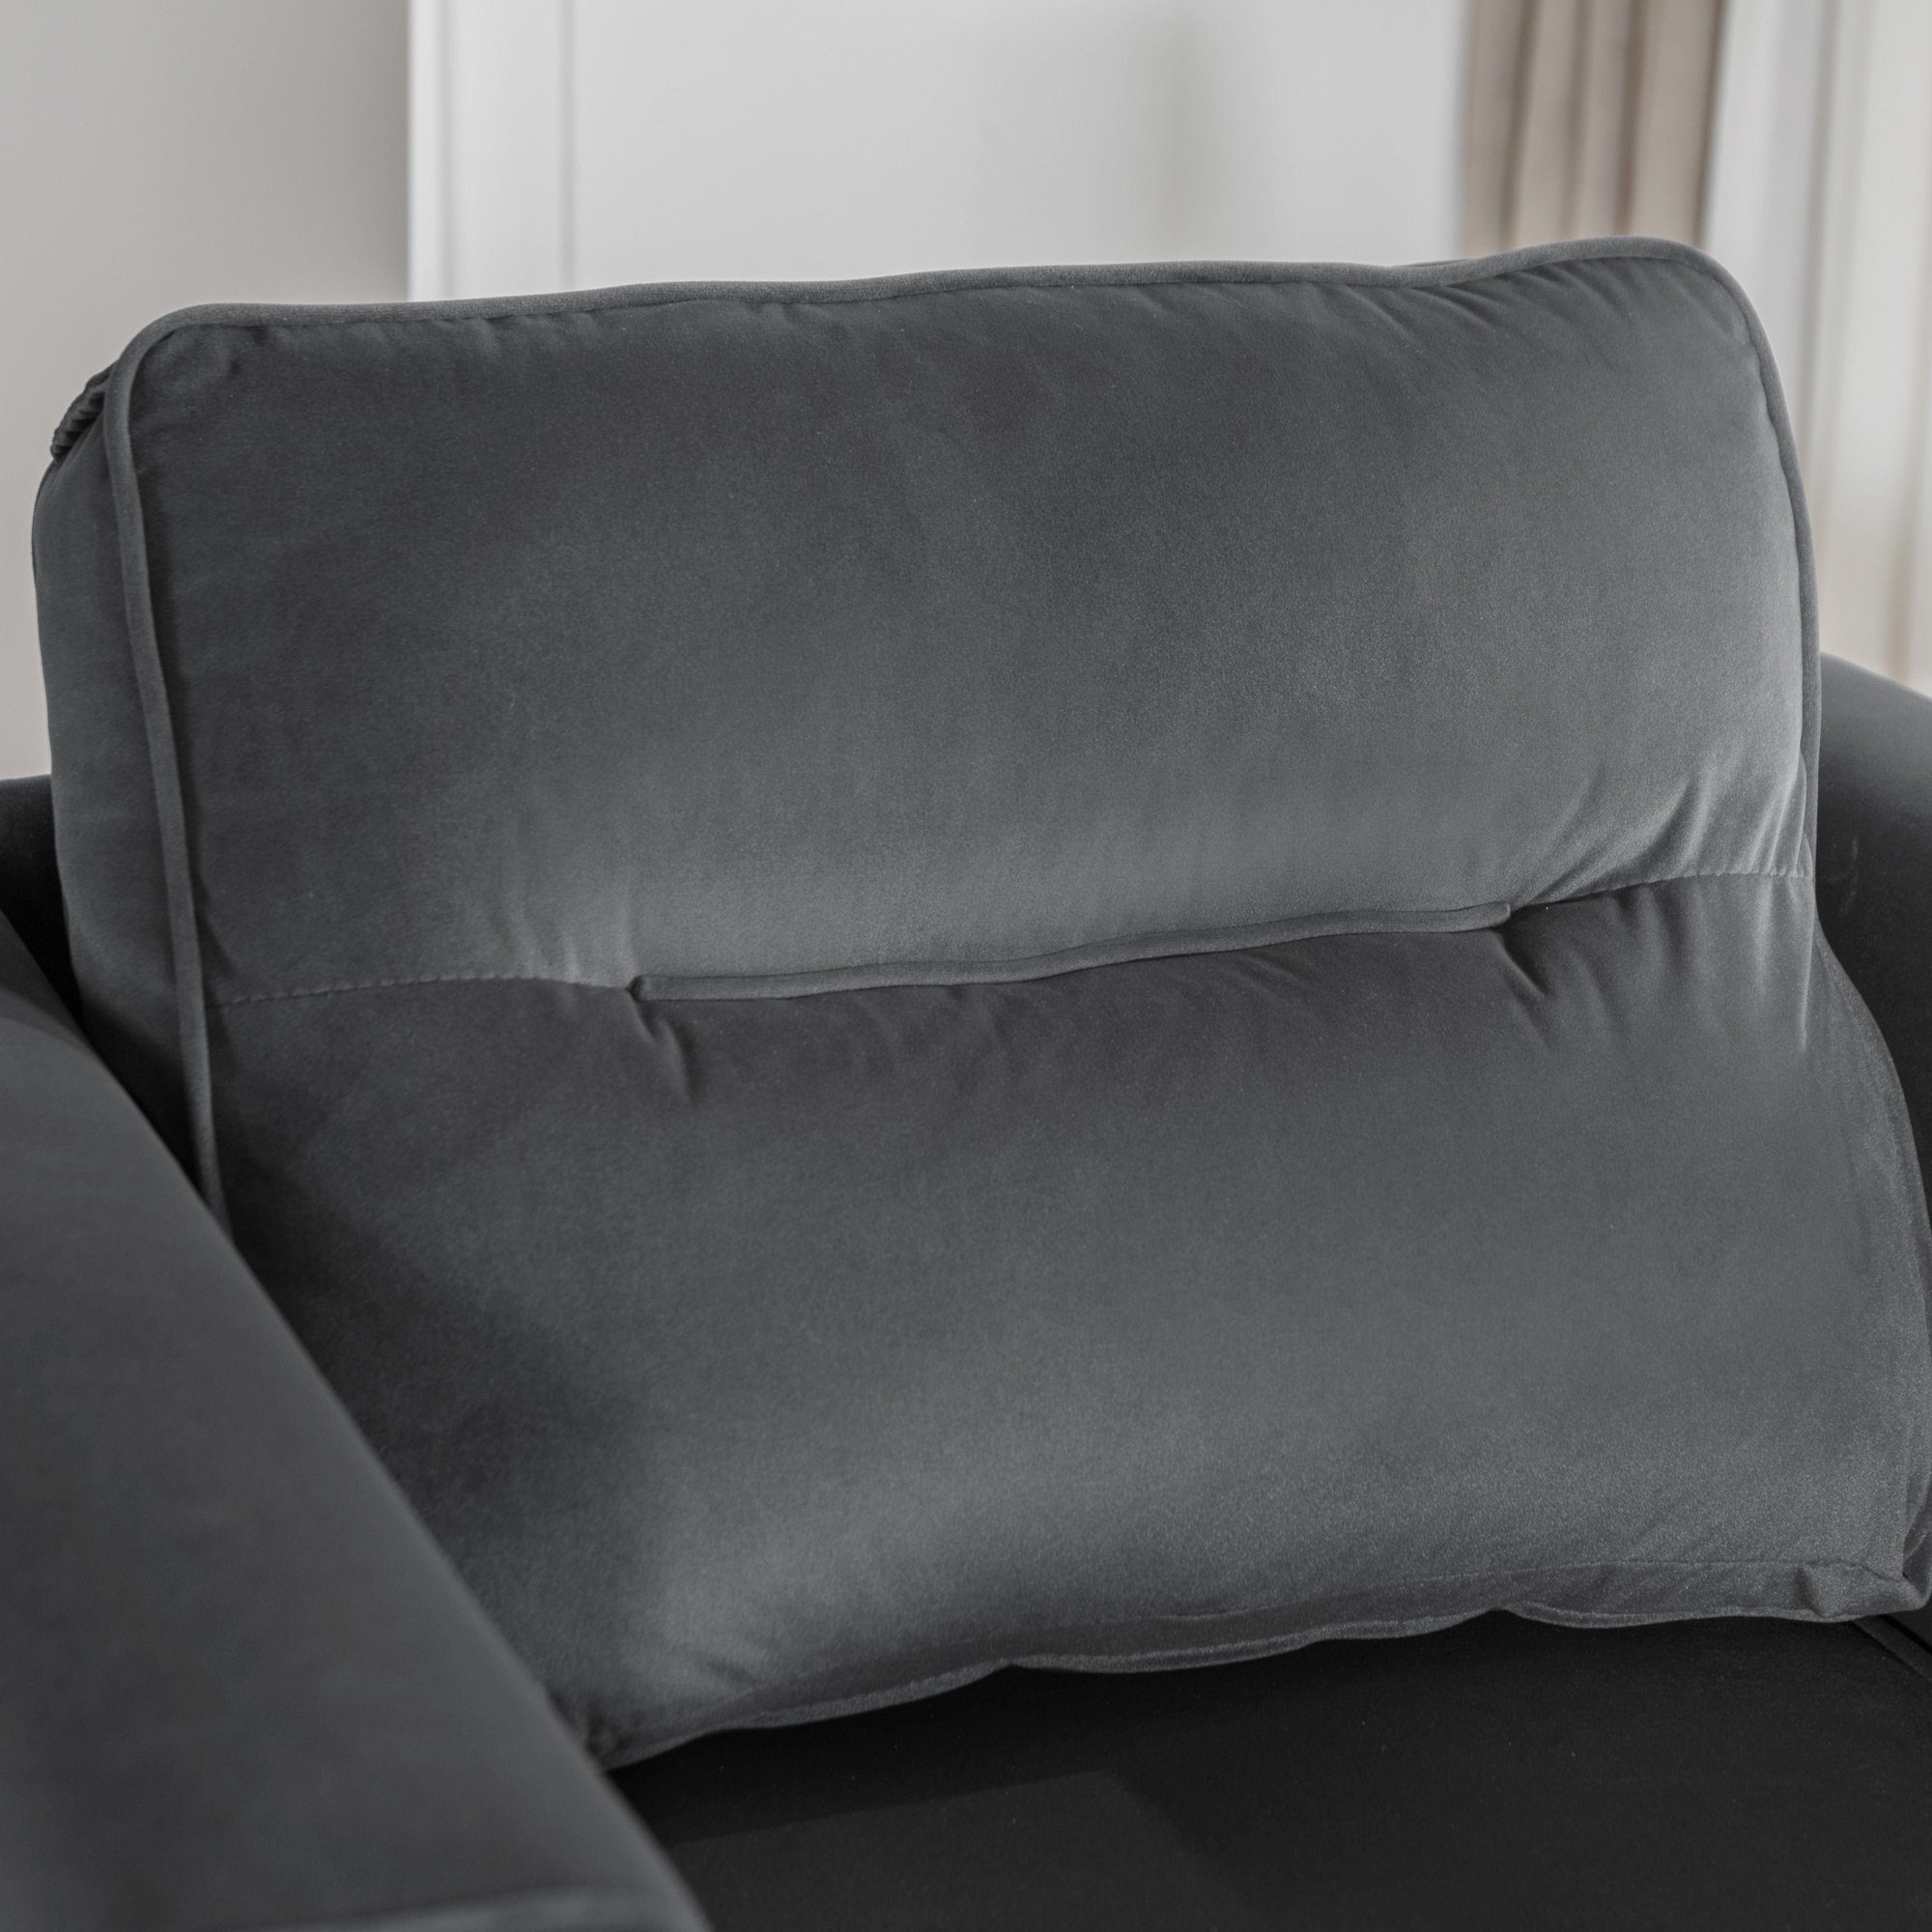 Fernsehsessel, Loungesessel, Sessel), Roségold-Metallbeine, einfacher Sessel Samtstuhl OKWISH grau (lässiger Sitzkissen Polster Sessel moderner und mit